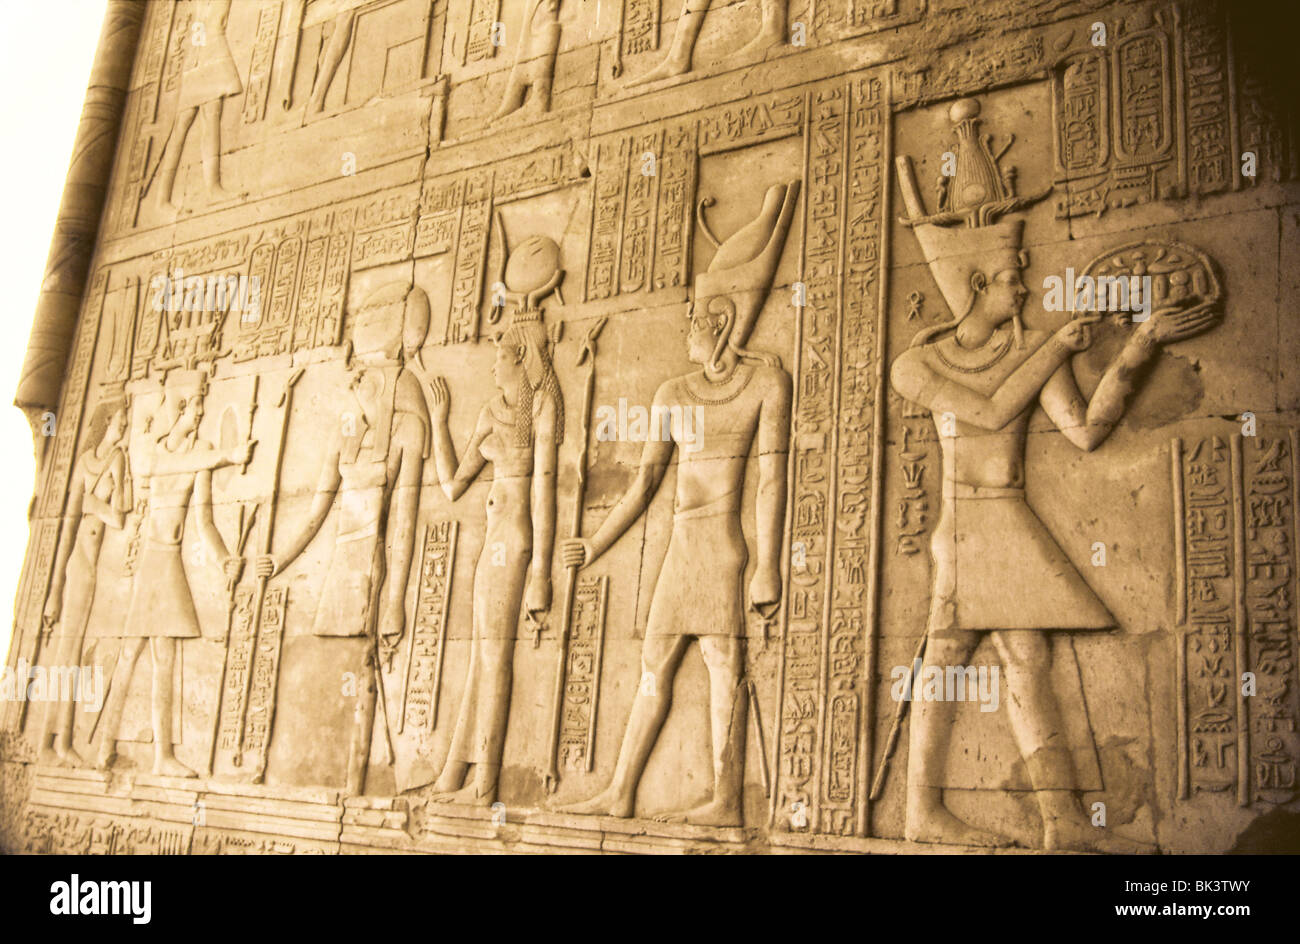 Sculpture murale bas-relief représentant des figures humaines et des divinités égyptiennes dans une ancienne ruine, l'Égypte. Banque D'Images